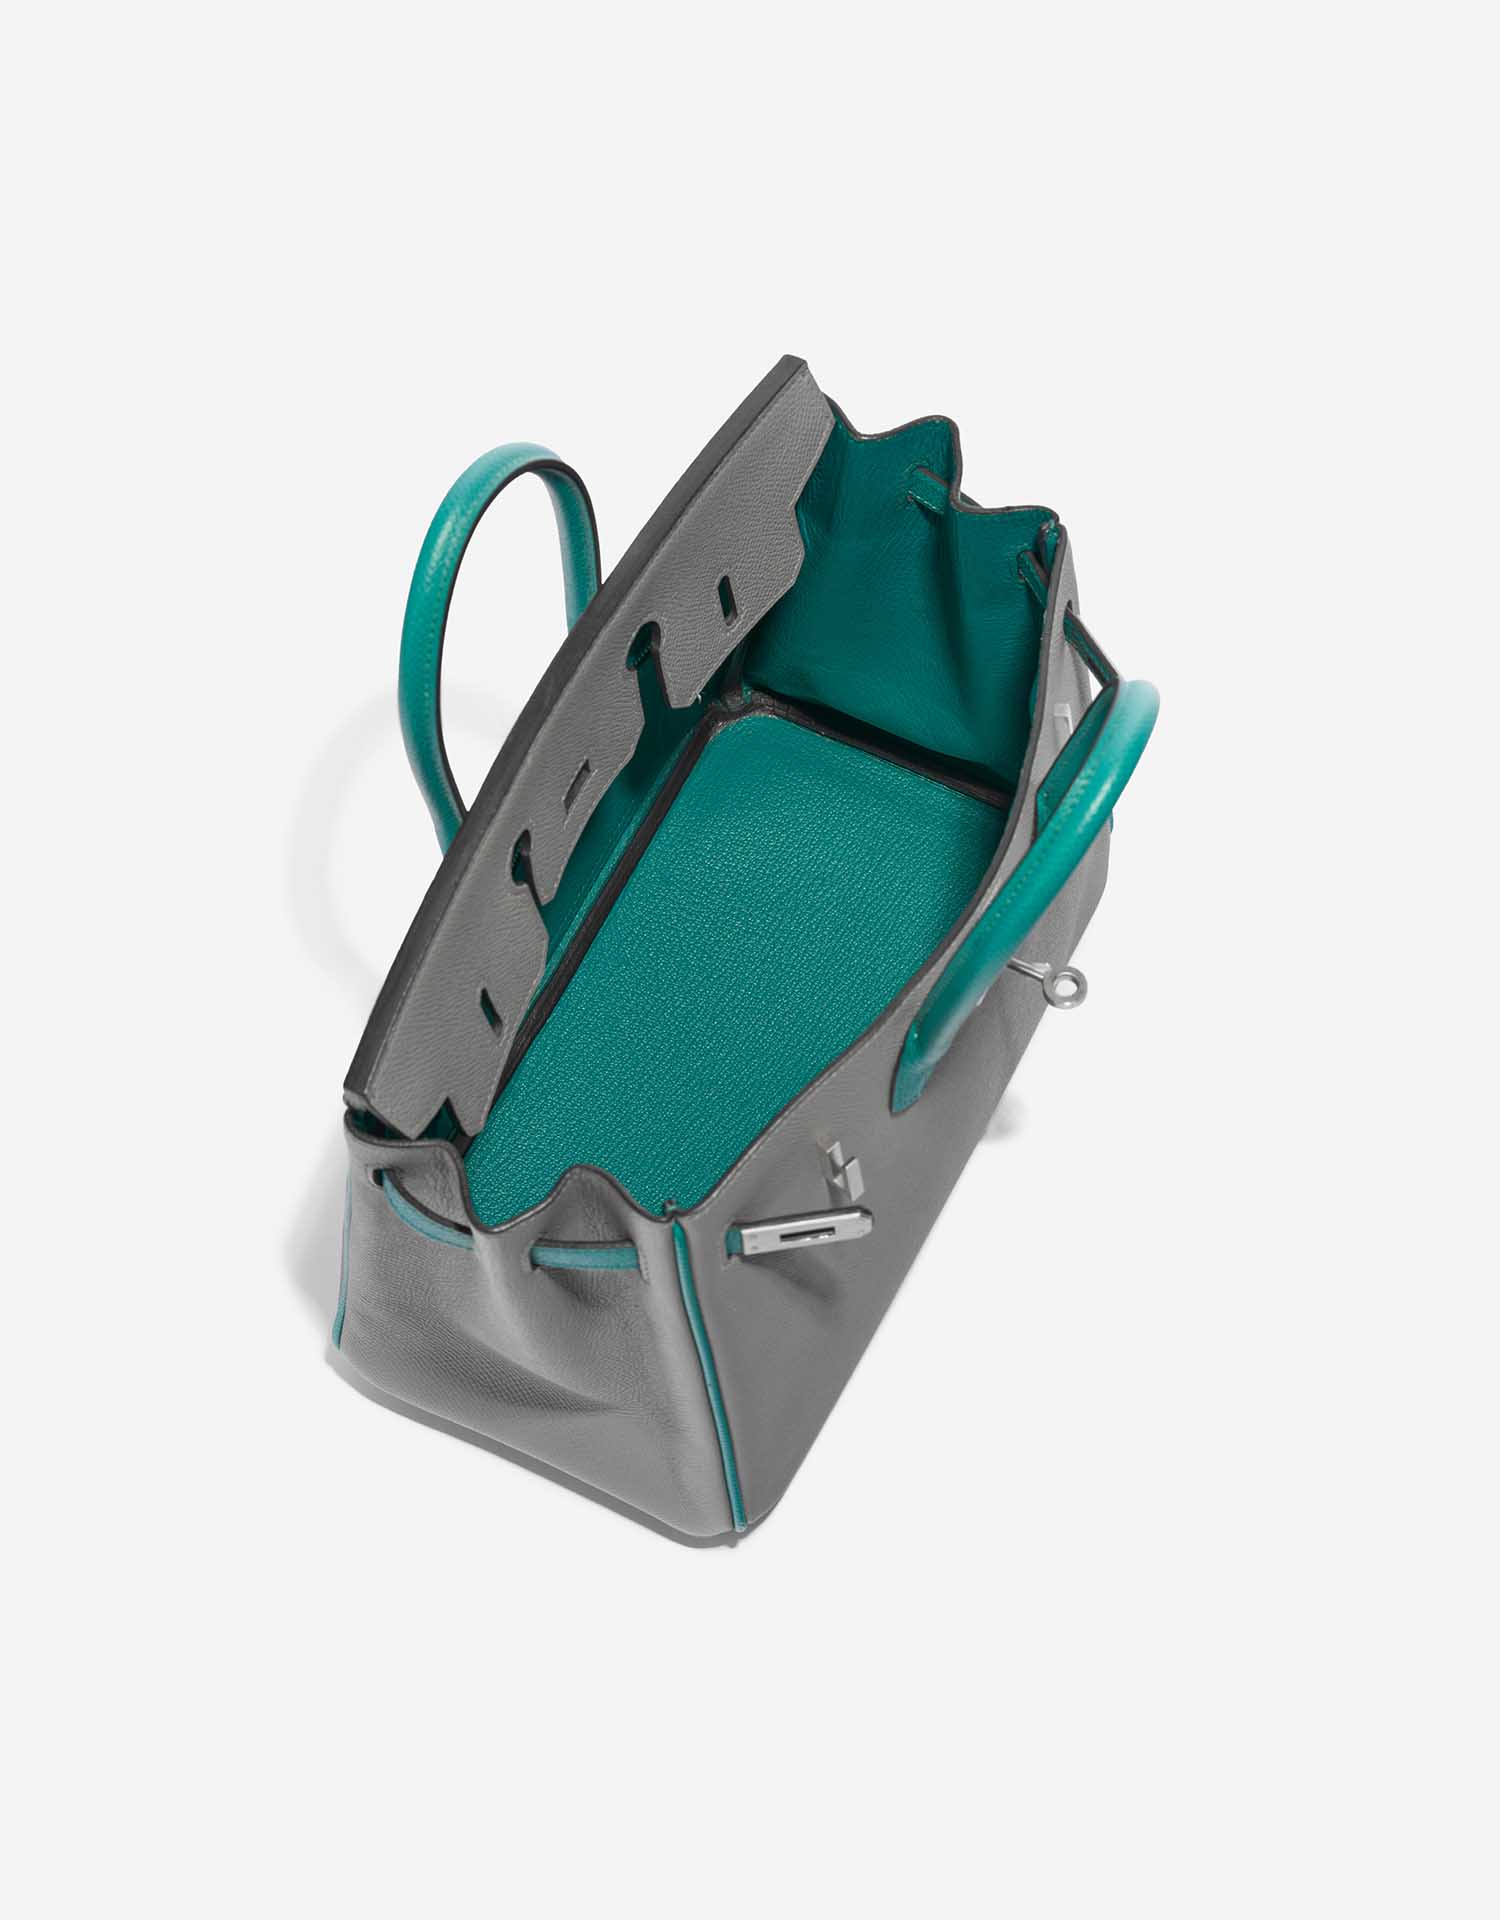 Gebrauchte Hermès Tasche Birkin HSS 25 Epsom Gris Mouette / Blue Paon Green, Grey Inside | Verkaufen Sie Ihre Designer-Tasche auf Saclab.com